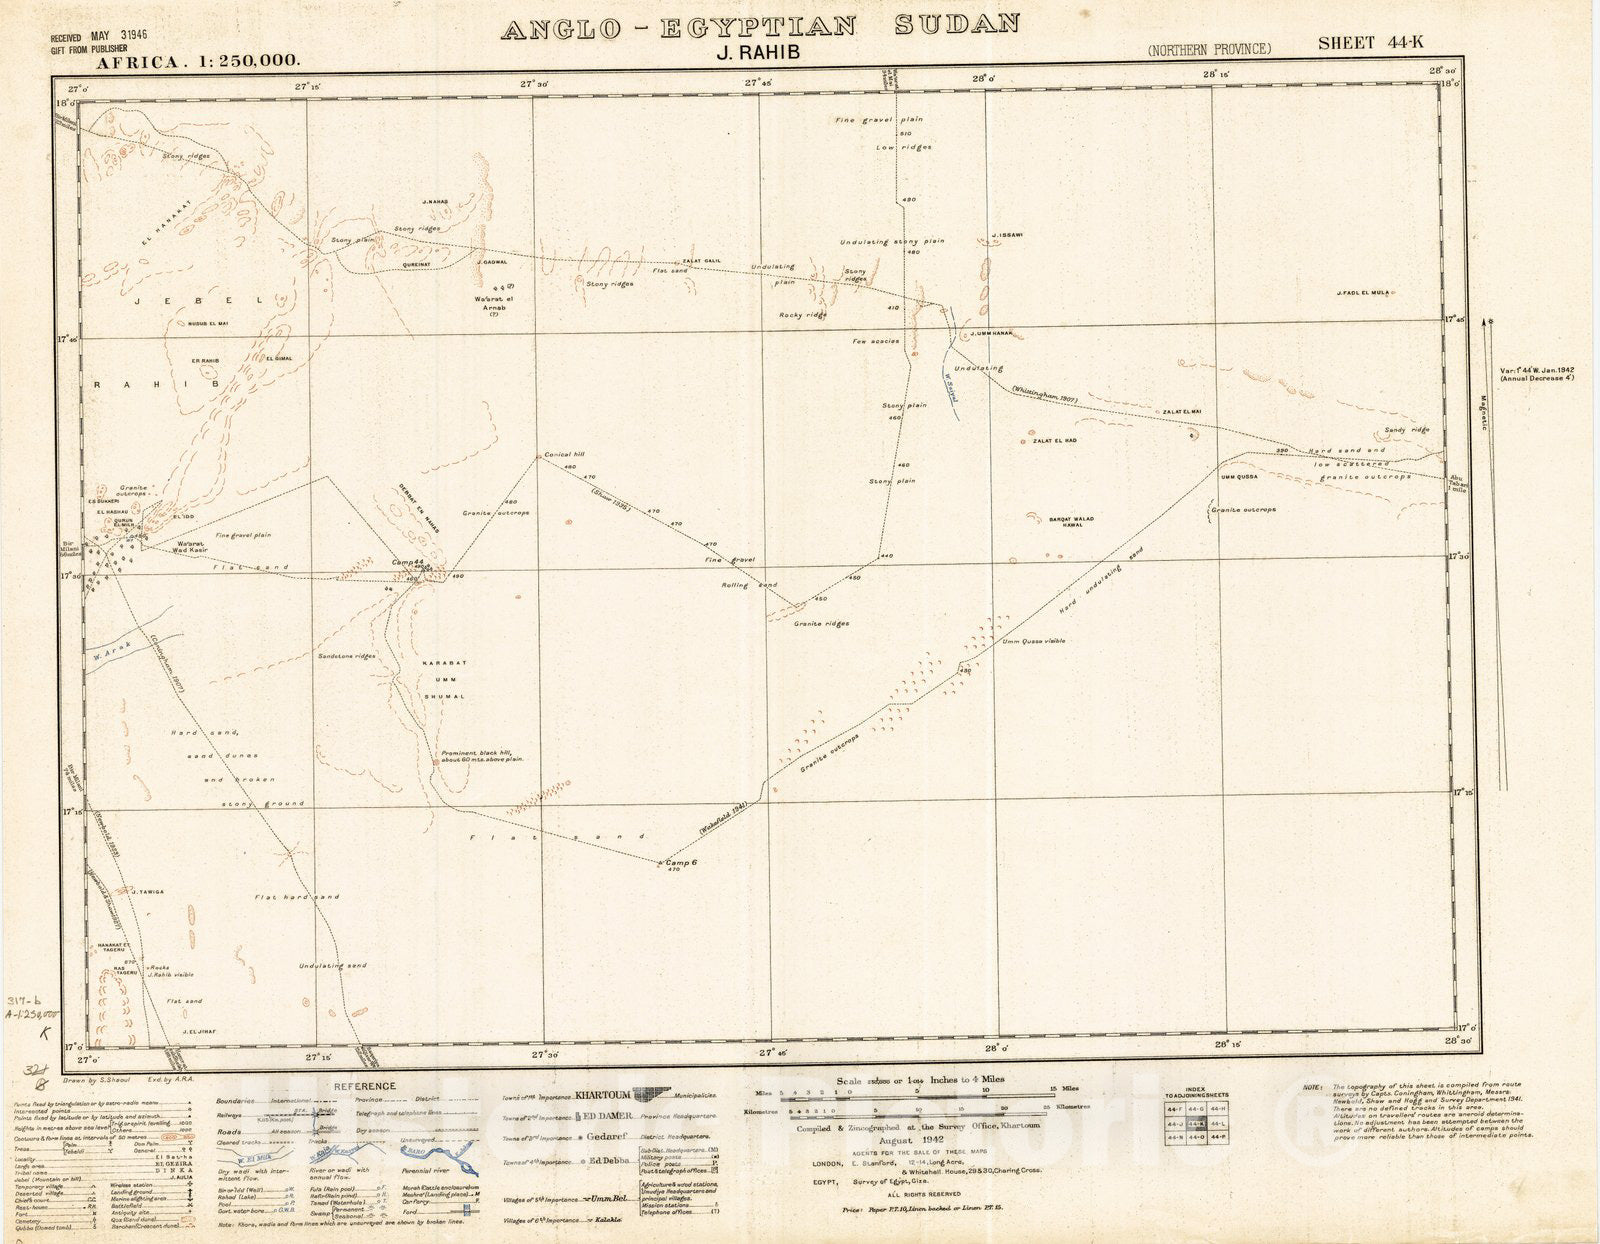 Map : J. Rahib Anglo-Egyptian Sudan 1942, Africa 1:250,000, Anglo-Egyptian Sudan, J. Rahib sheet 44-K , Antique Vintage Reproduction